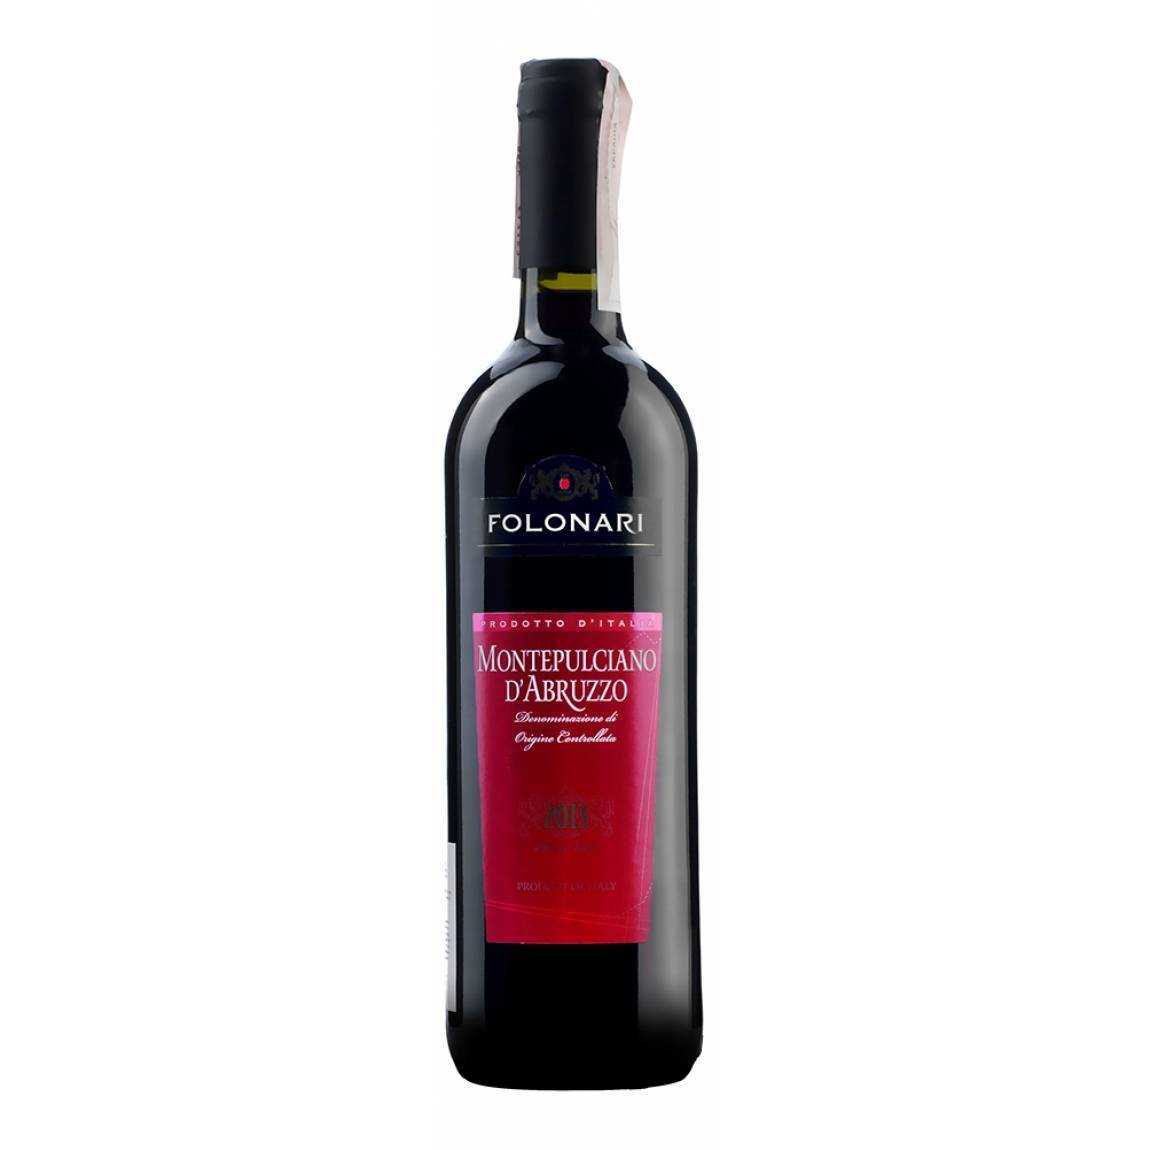 Пьемонт: винодельческий регион италии. история, сорта винограда, вина и т.д. | я люблю вино